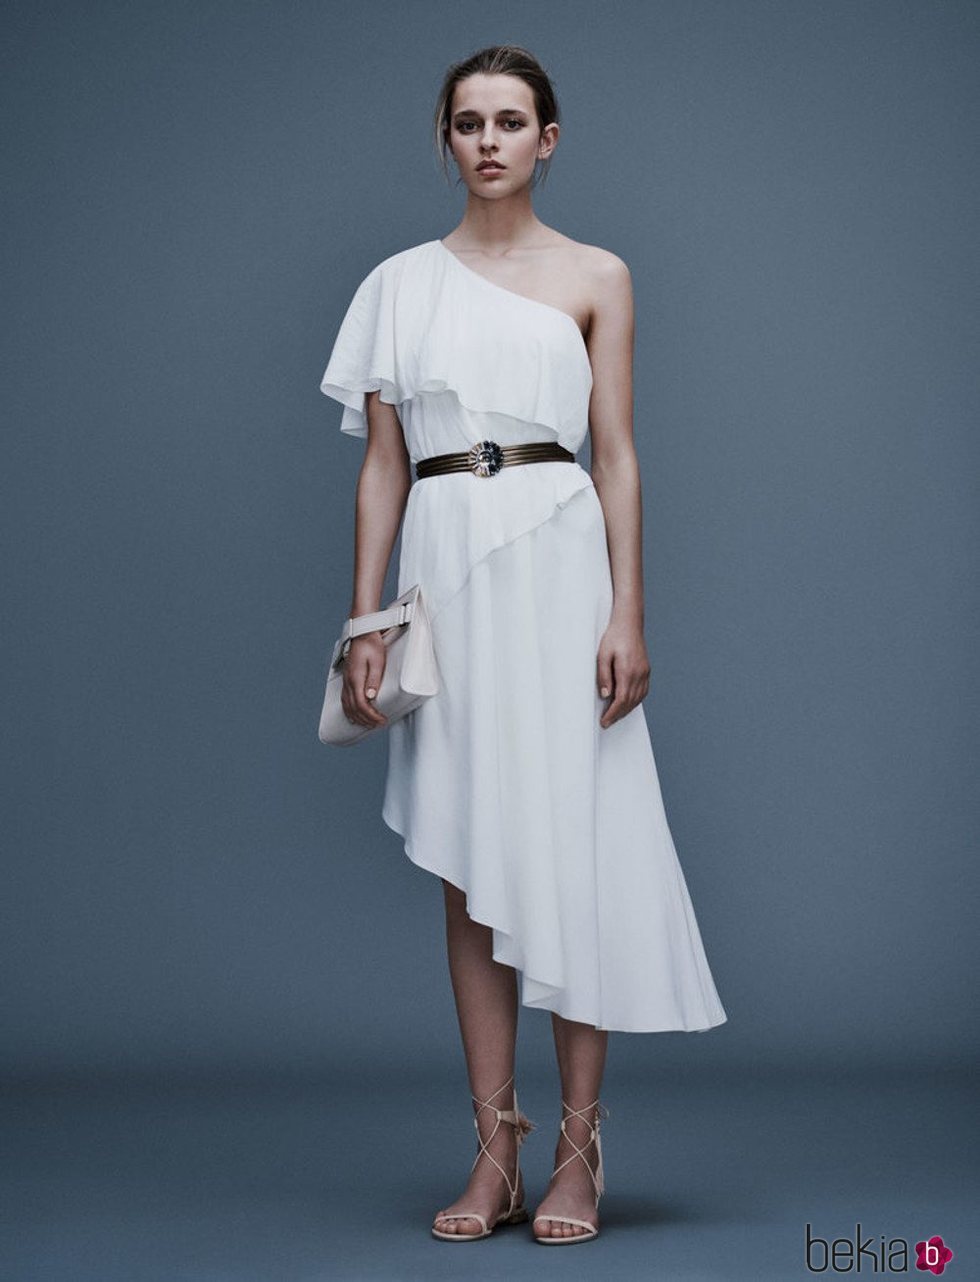 Vestido blanco hombro descubierto colección primavera 2019 de Lanvin